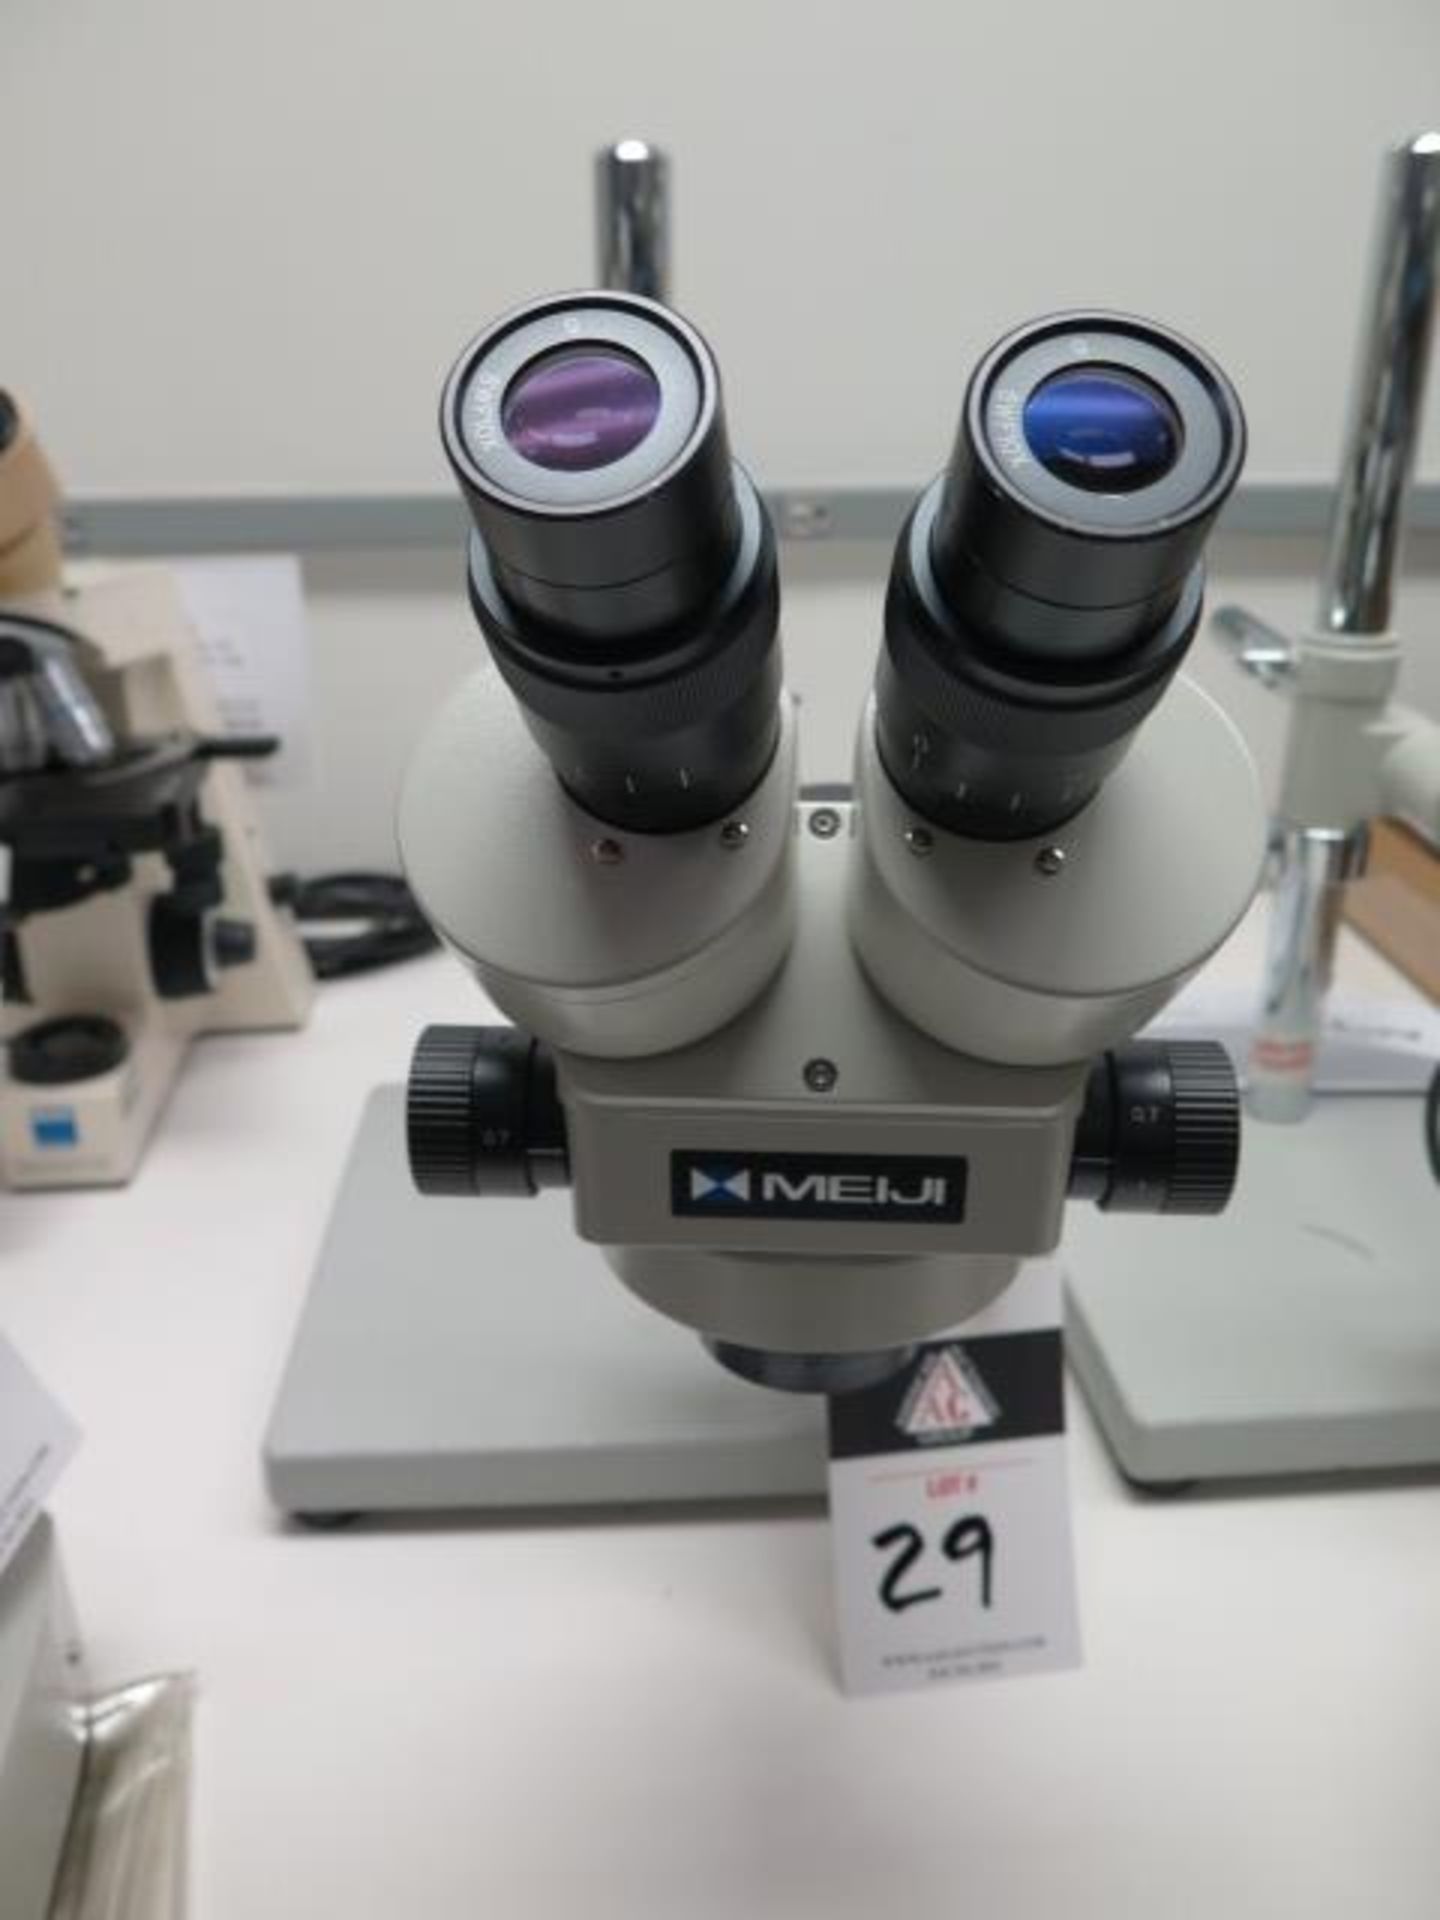 Meiji EZM Stereo Microscope (SOLD AS-IS - NO WARRANTY)